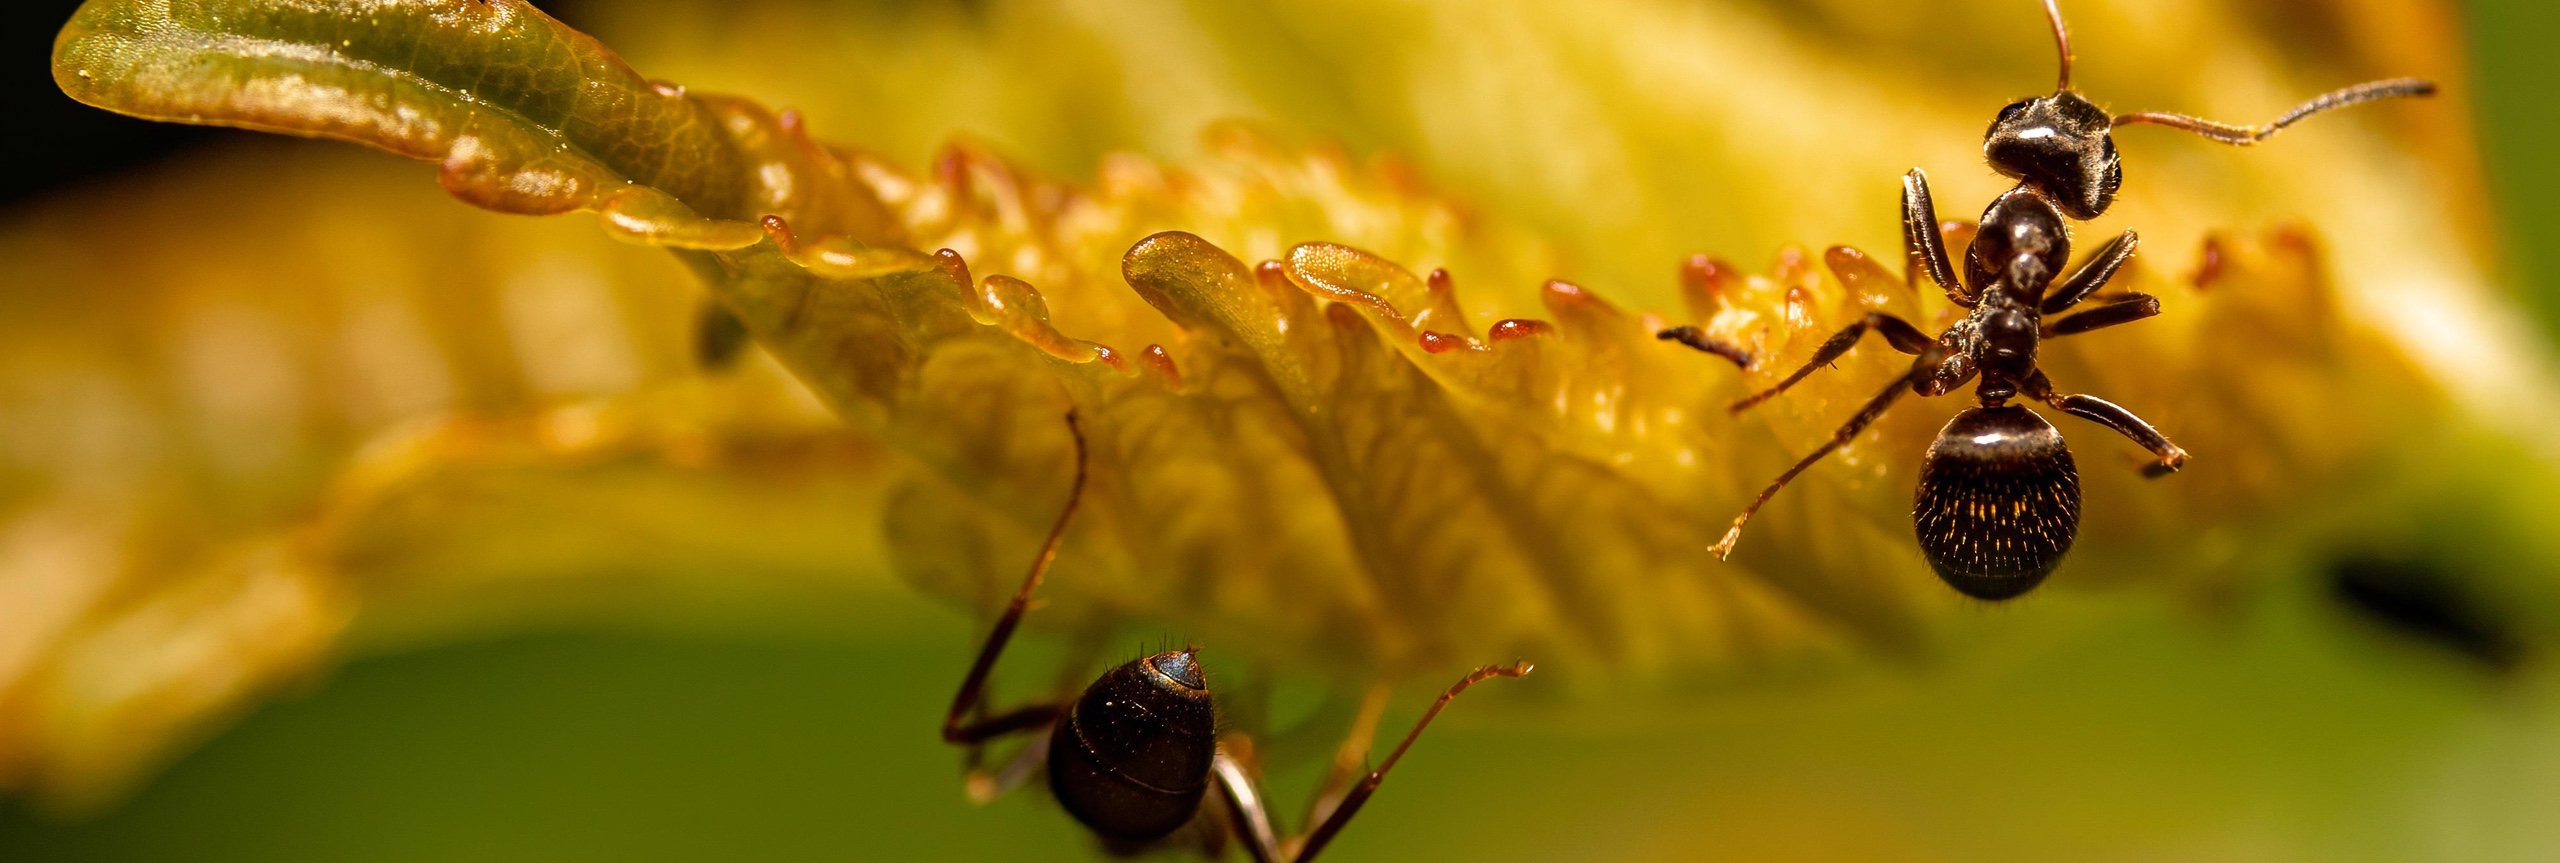 twee zwarte mieren die op een geel blad lopen met een wazige achtergrond